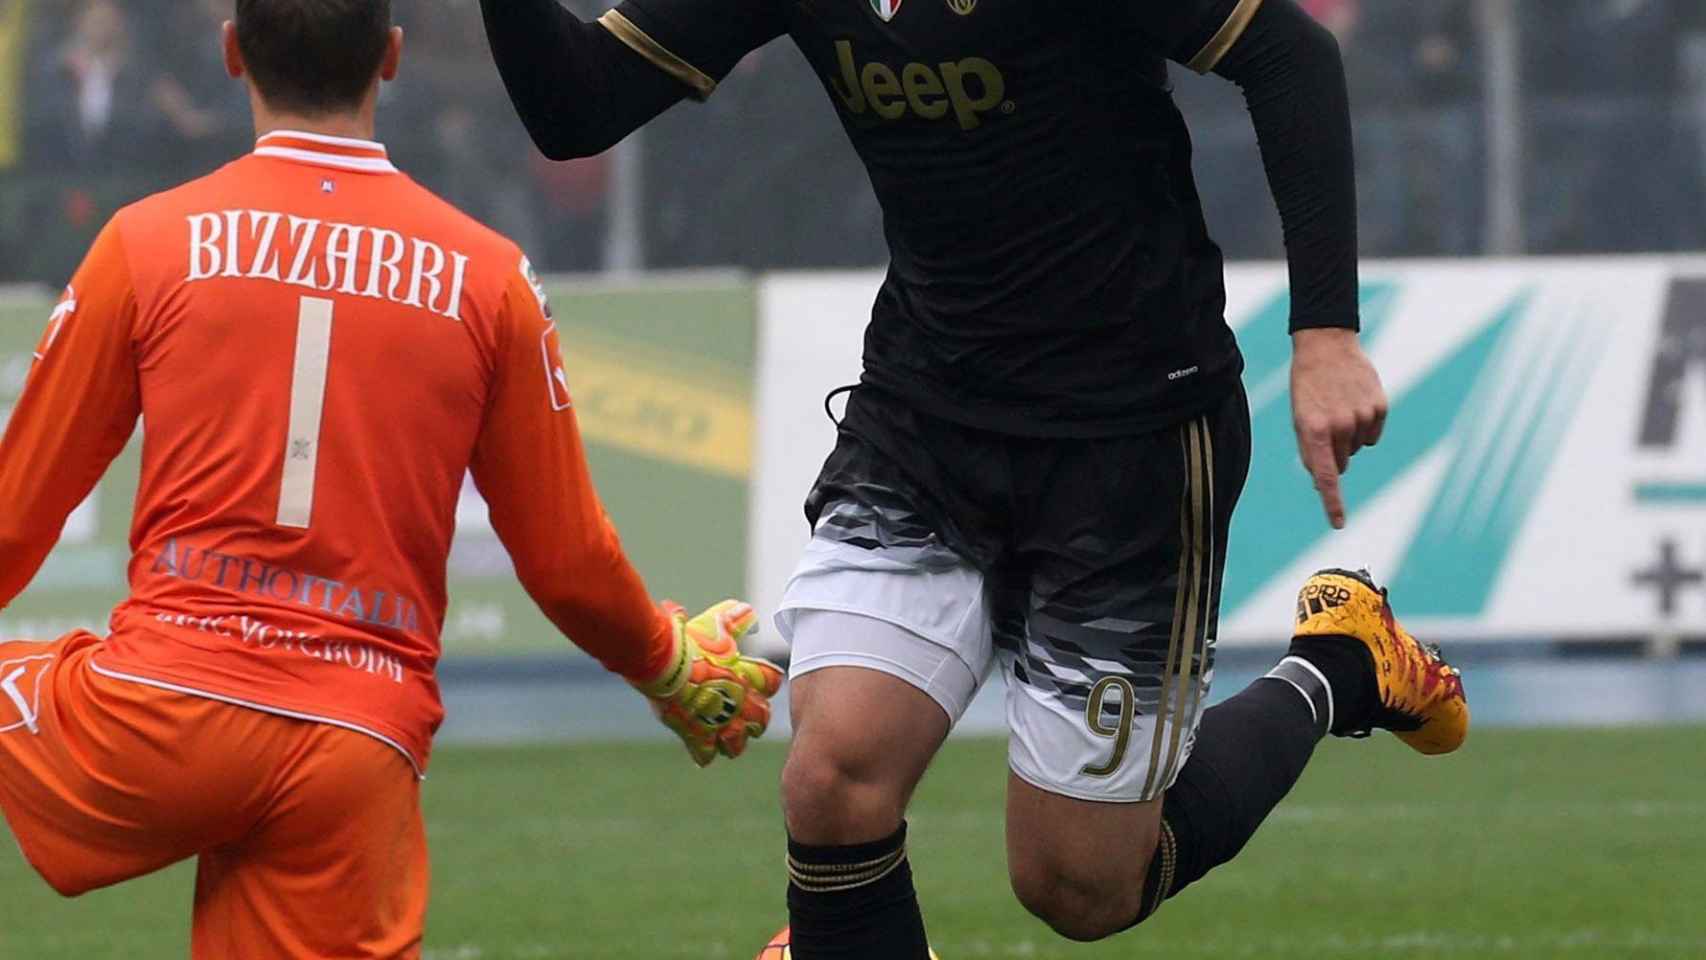 Morata celebra uno de sus dos goles ante el Chievo